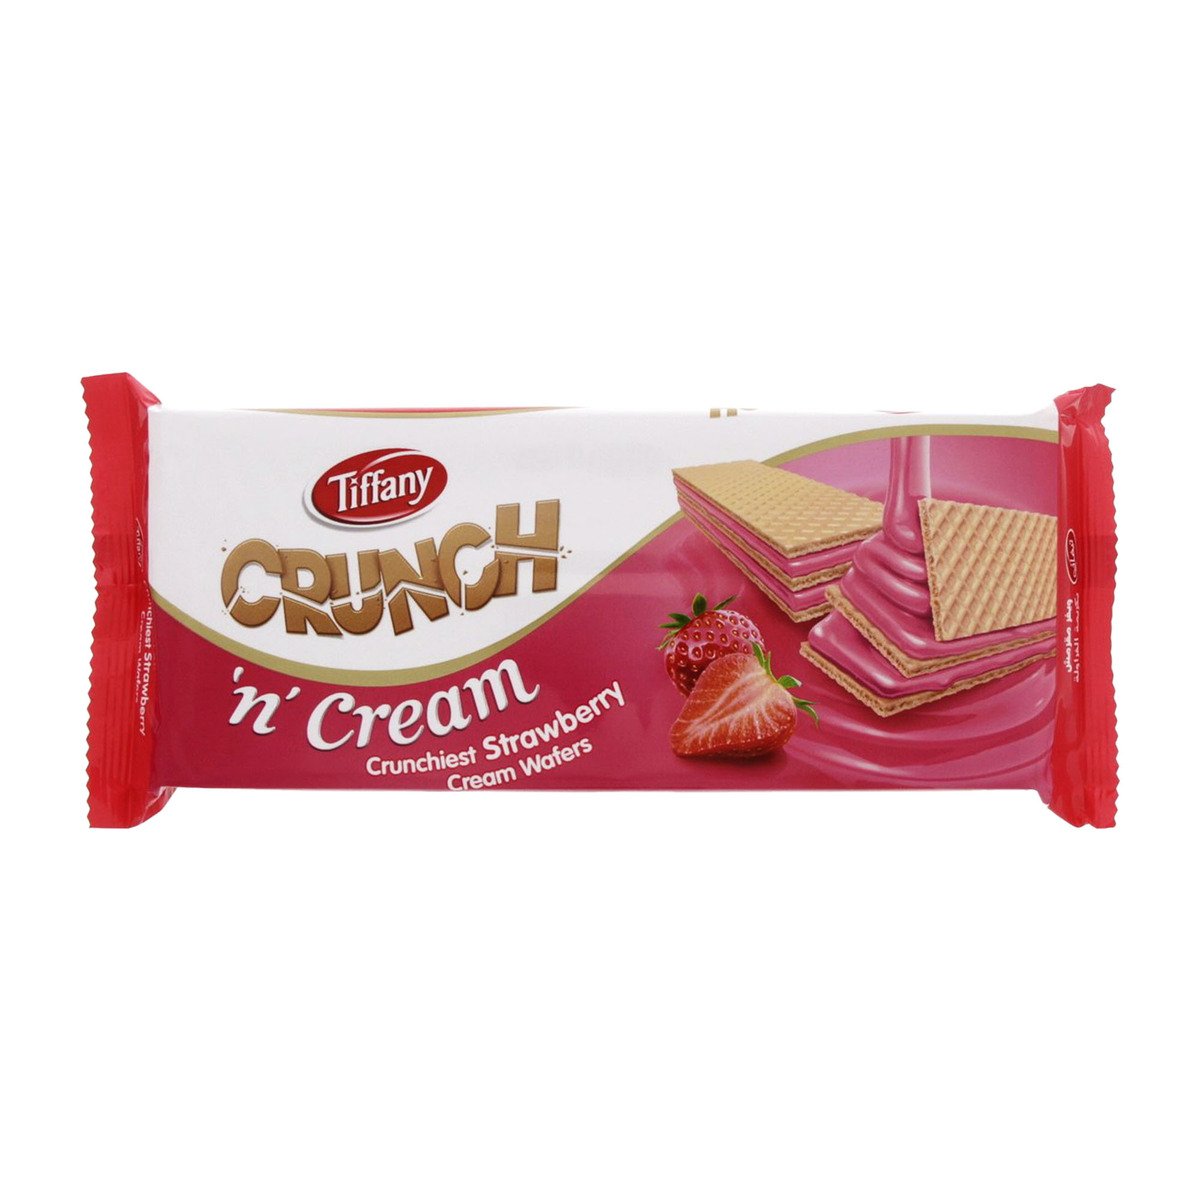 Tiffany Crunch 'n' Cream Strawberry Cream Wafers 135 g